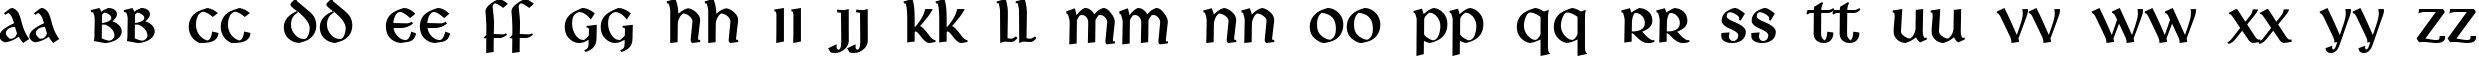 Пример написания английского алфавита шрифтом Deutsche Uncialis